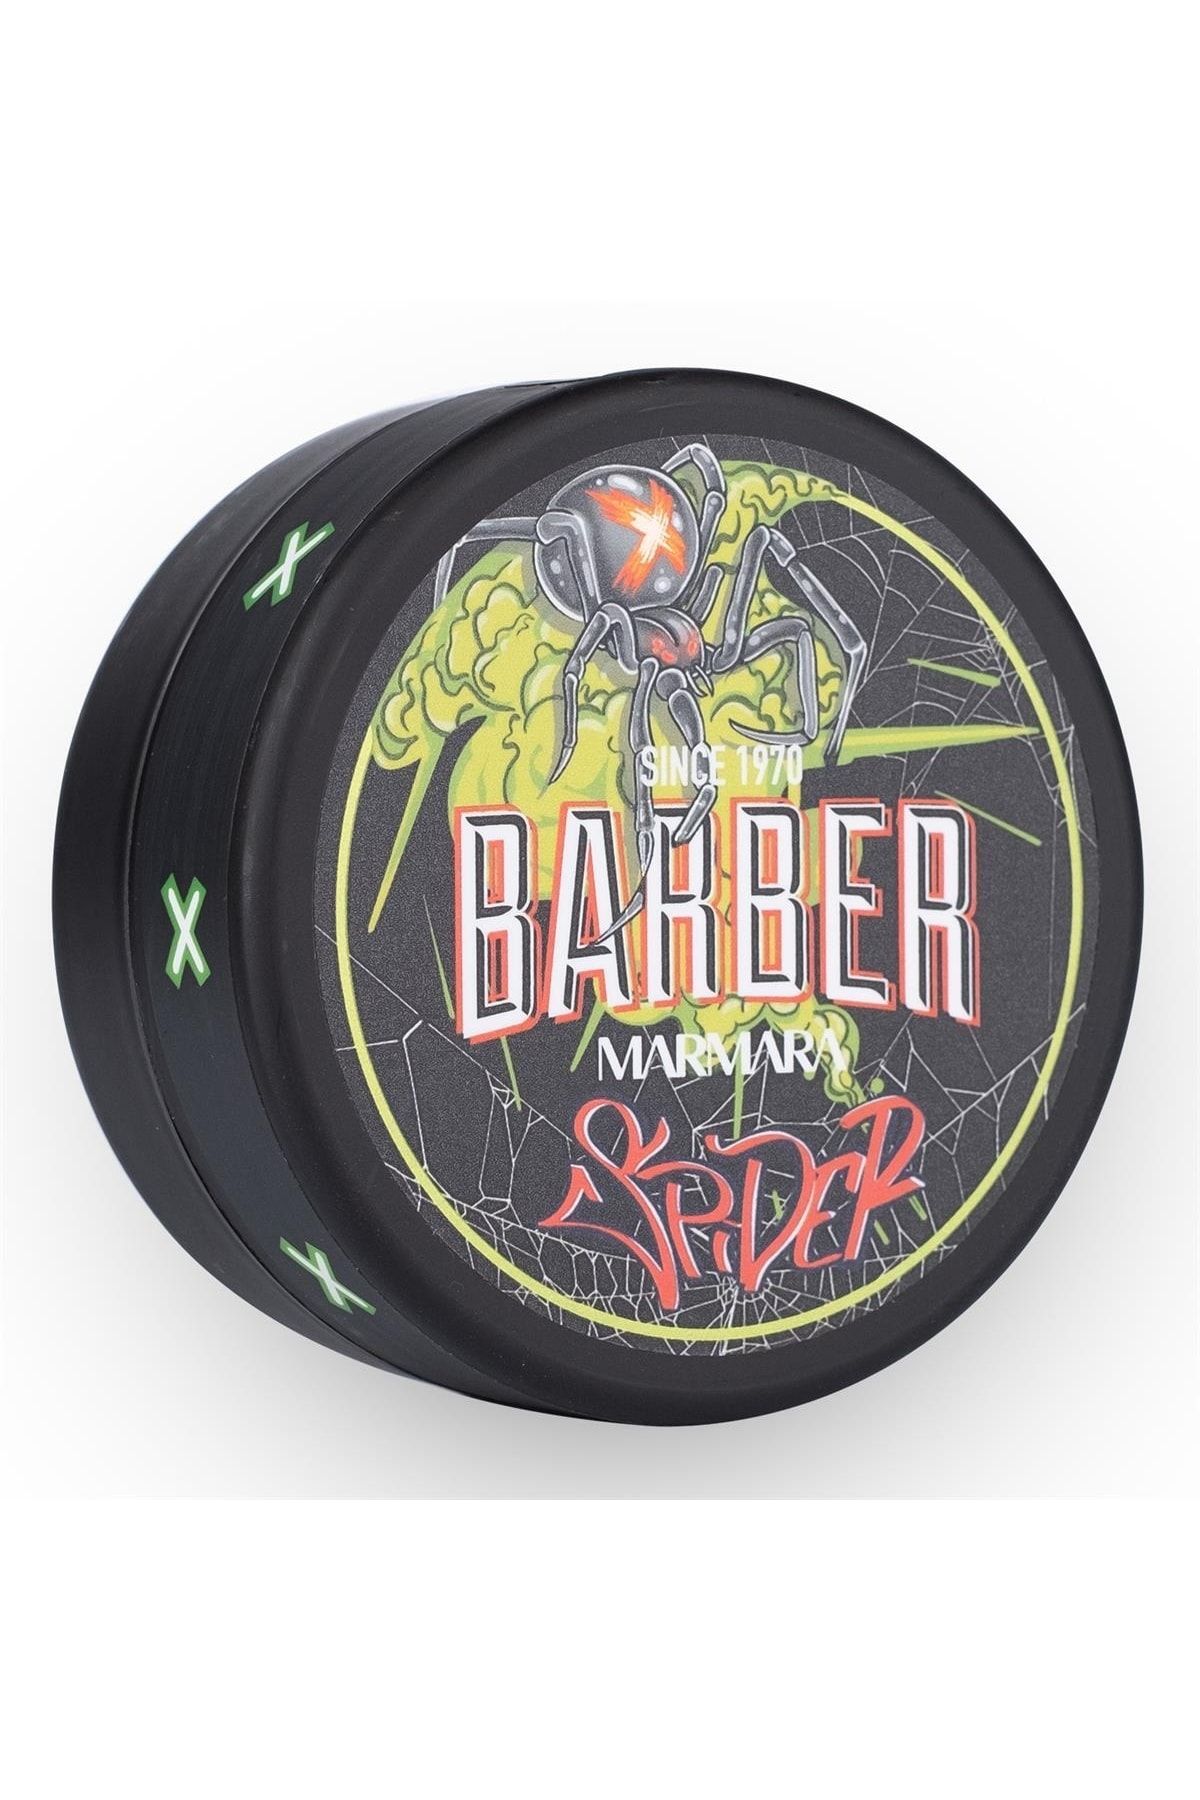 Barber Marmara Aqua Wax Spider 150 Ml, Tutuş: 10/10, Parlaklık: 10/10